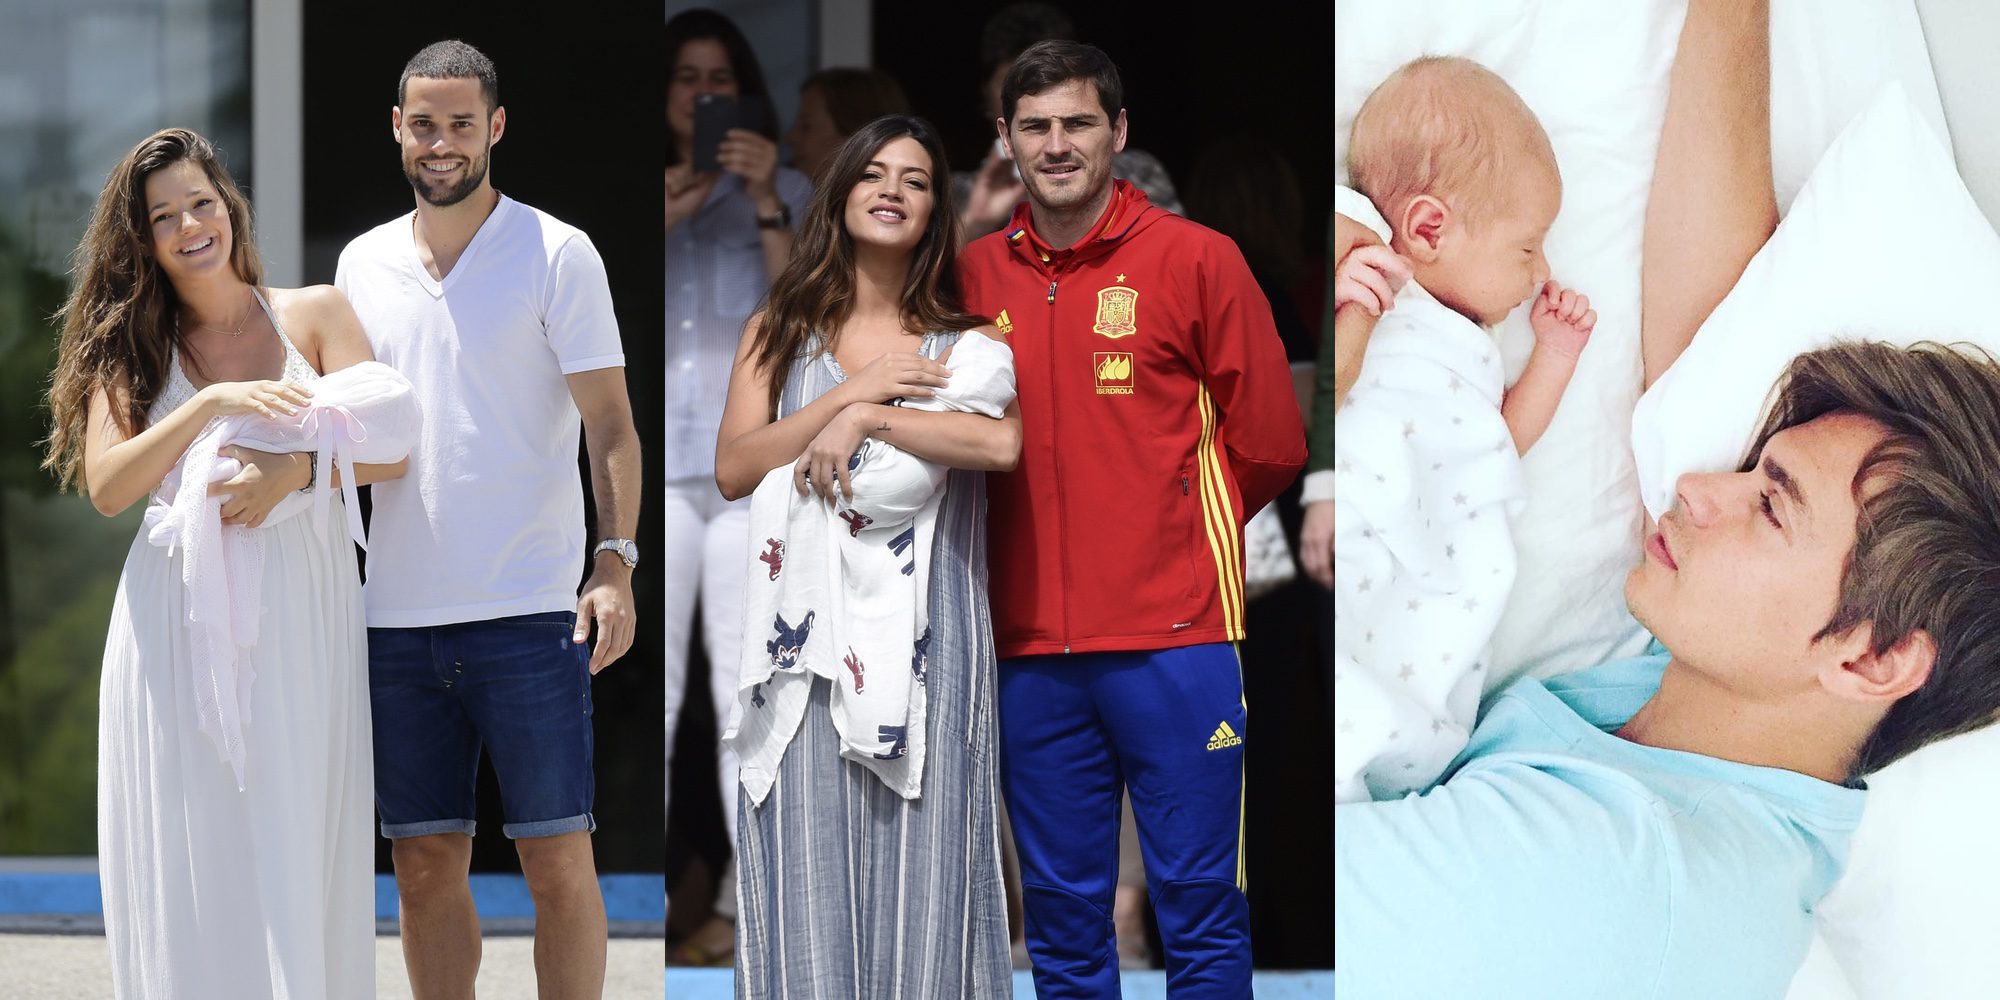 Lucas Casillas, Matilda Suárez, Markuss Baute, Ginevra Lequio... los bebés del verano 2016